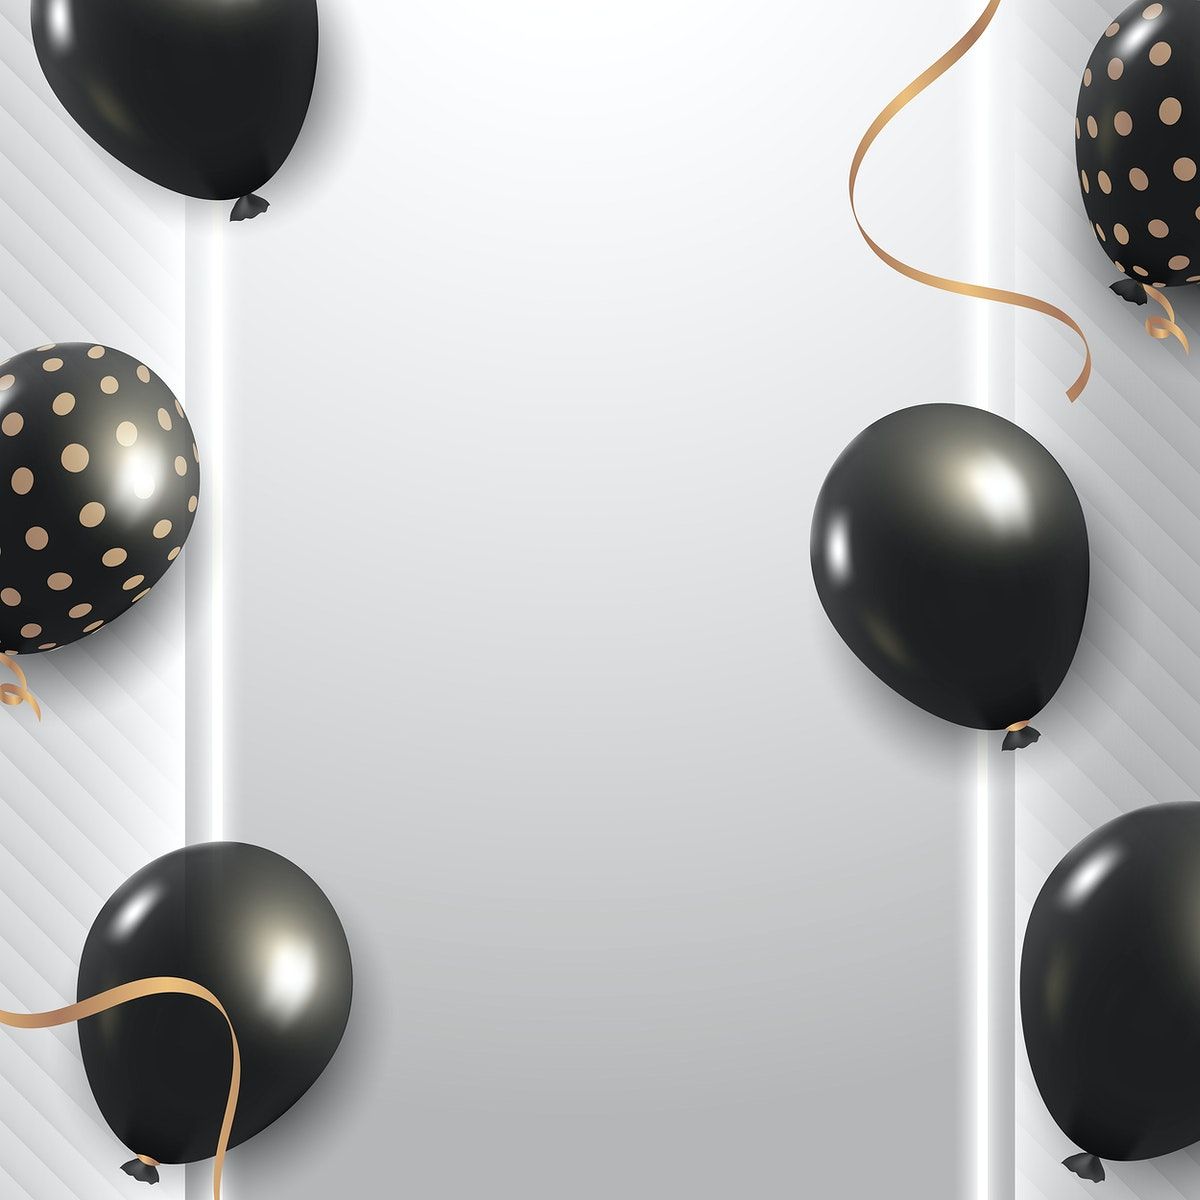 Metallic black party balloons banner vectorrawpixel.com